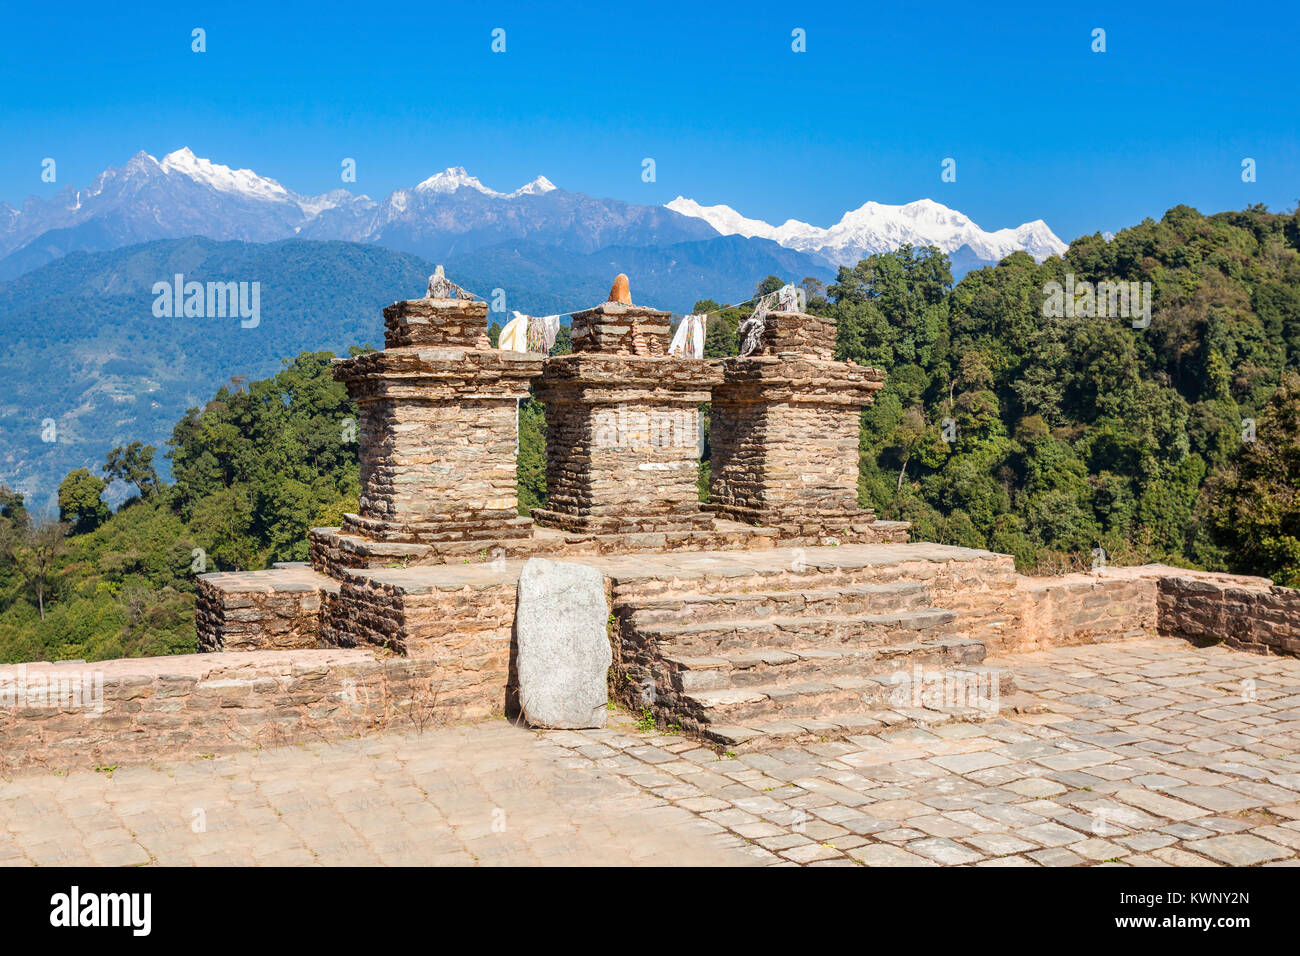 Rabdentse rovine nei pressi di ortografia, Sikkim stato in India. Rabdentse fu la seconda capitale del primo regno del Sikkim. Foto Stock